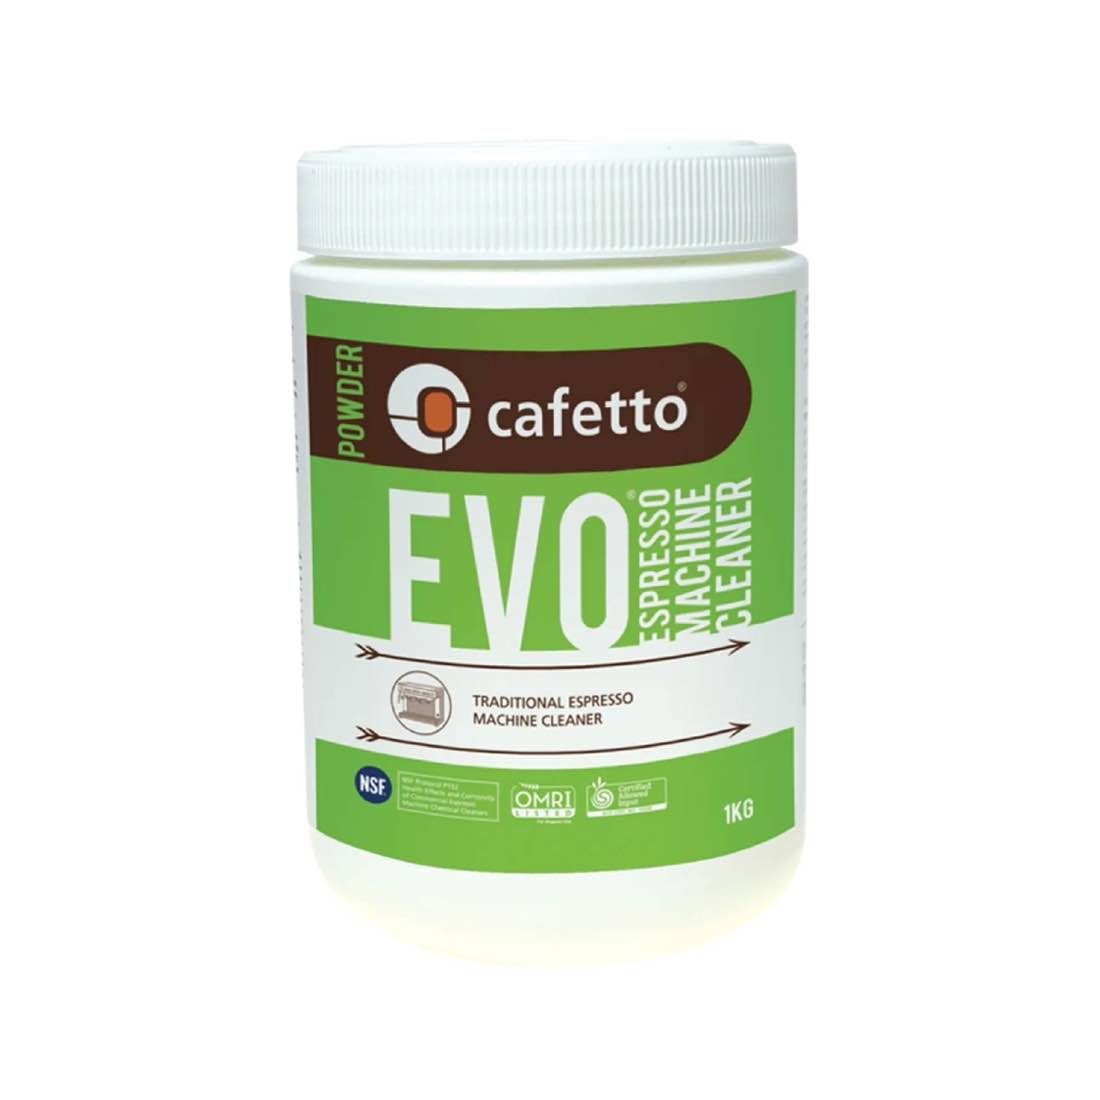 Cafetto EVO - Espresso Machine Cleaner - Image 3